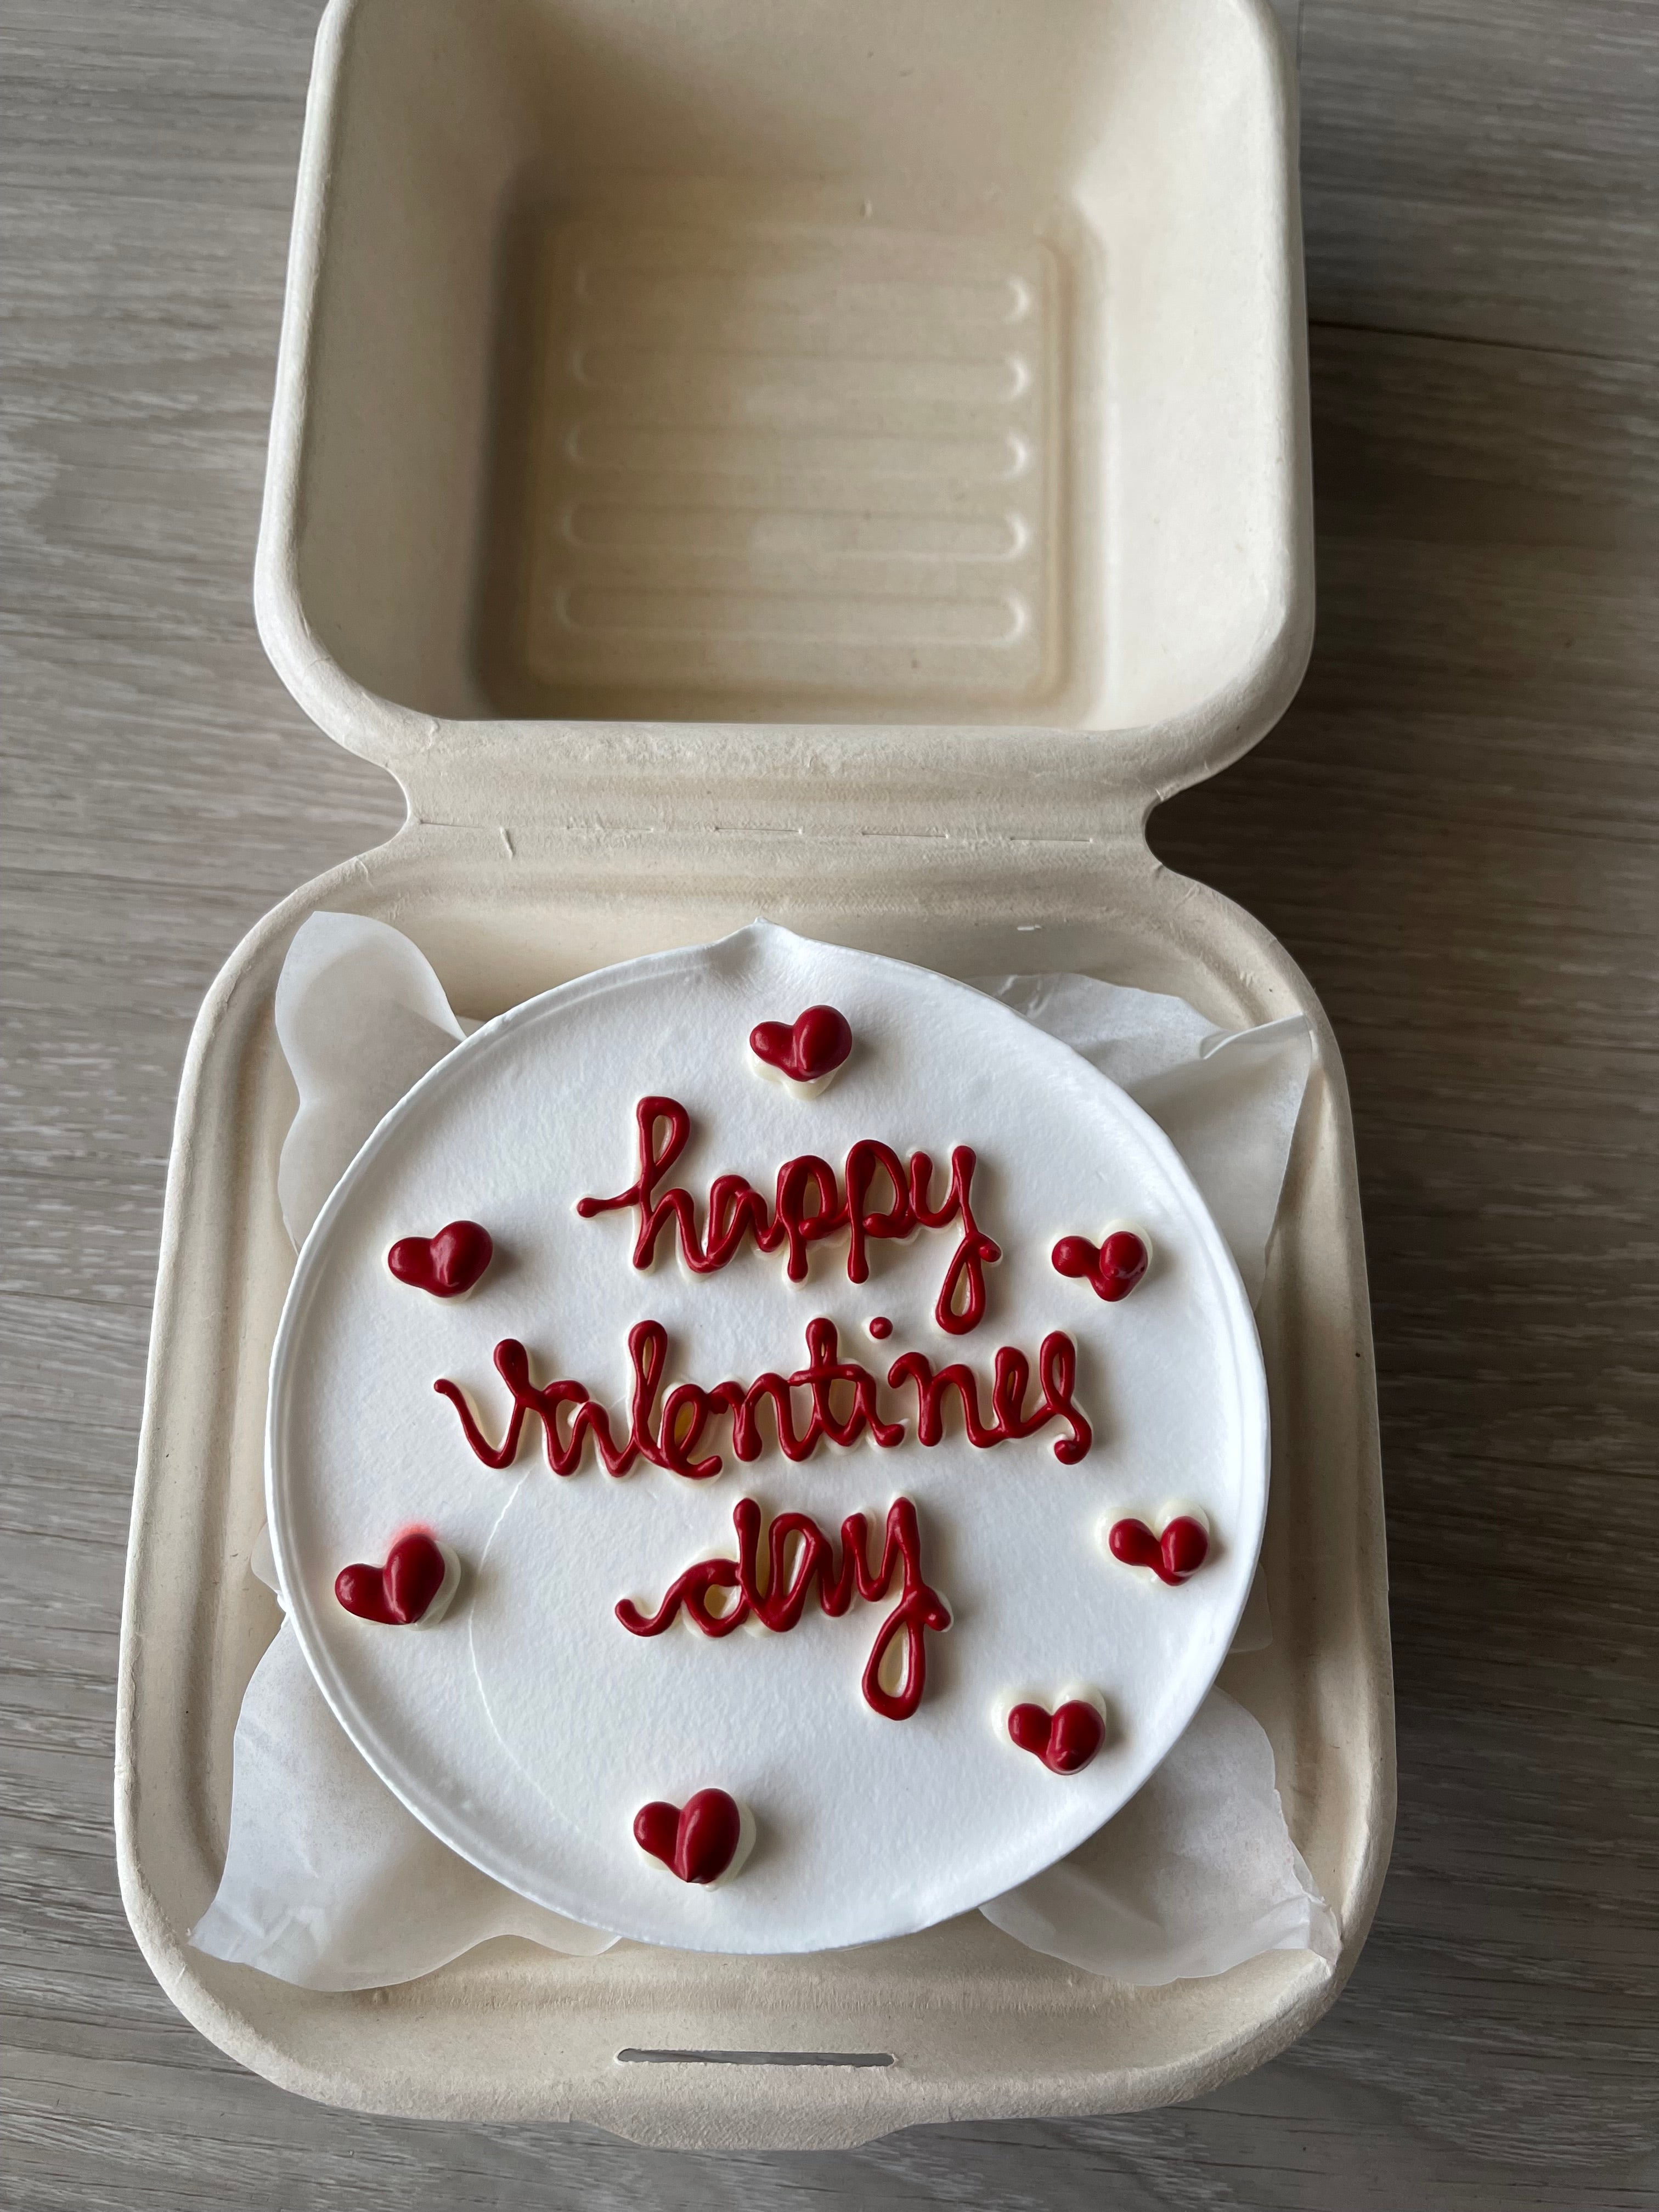 Happy valentines cake